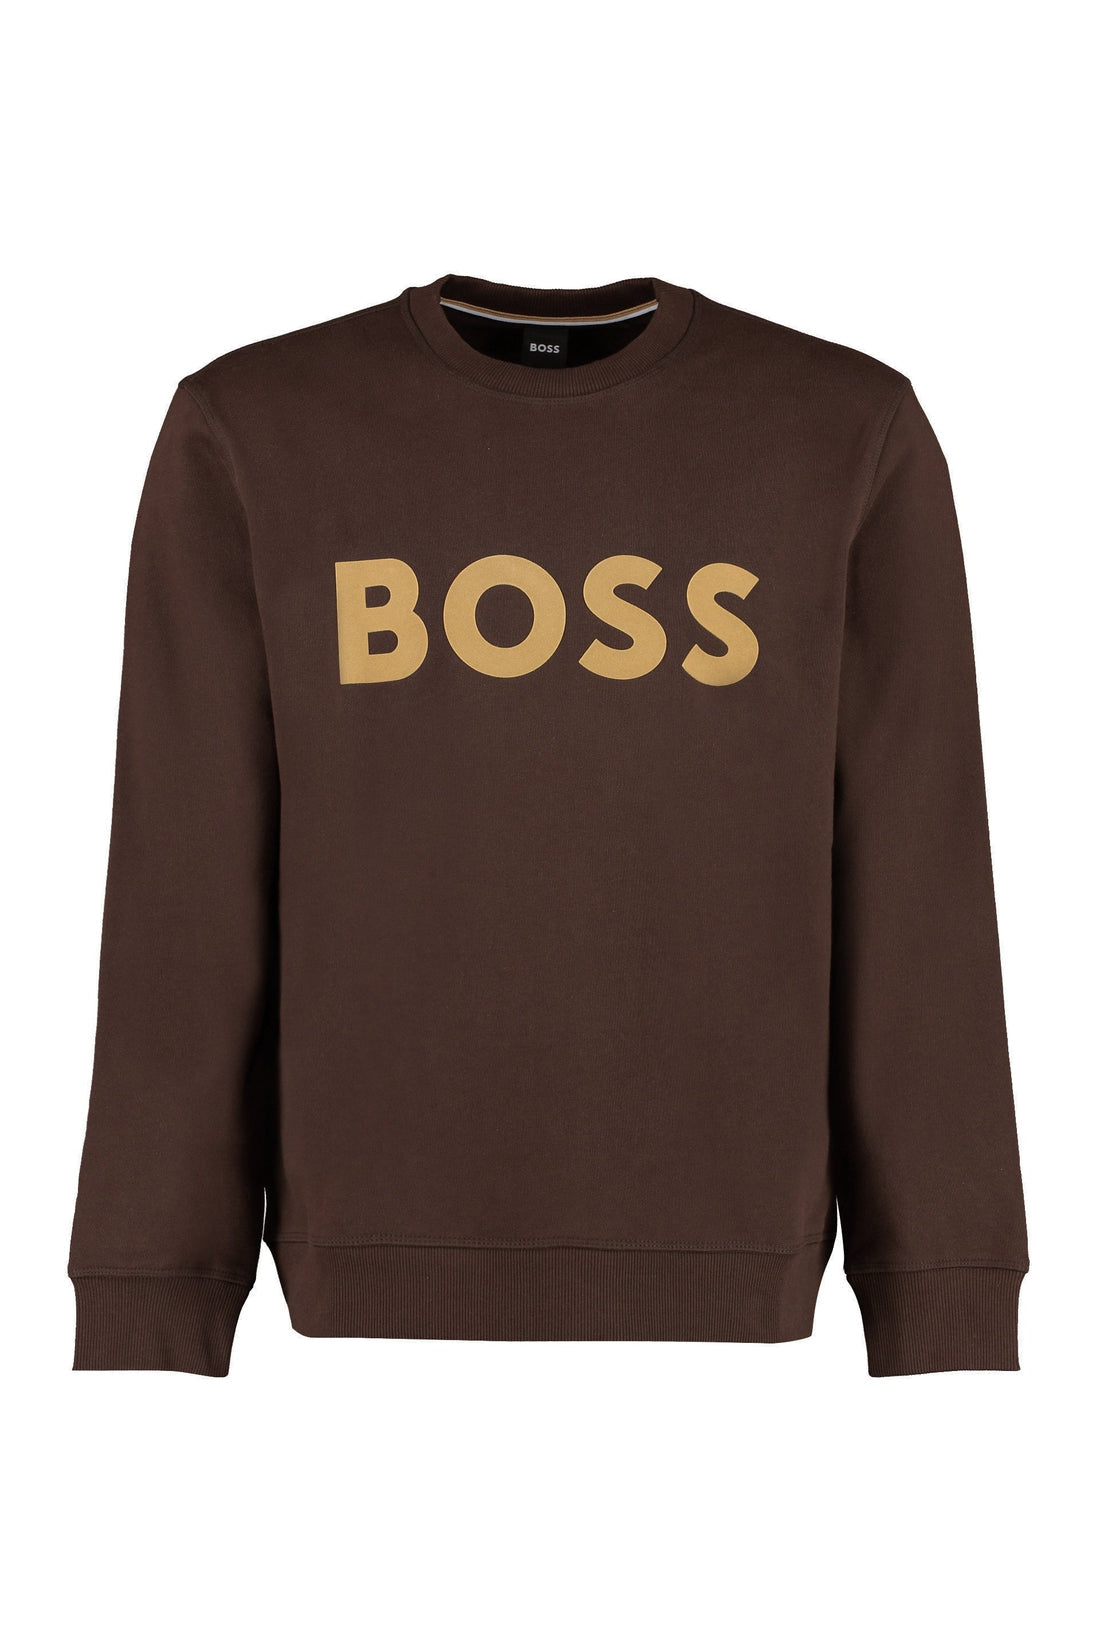 BOSS-OUTLET-SALE-Logo detail cotton sweatshirt-ARCHIVIST